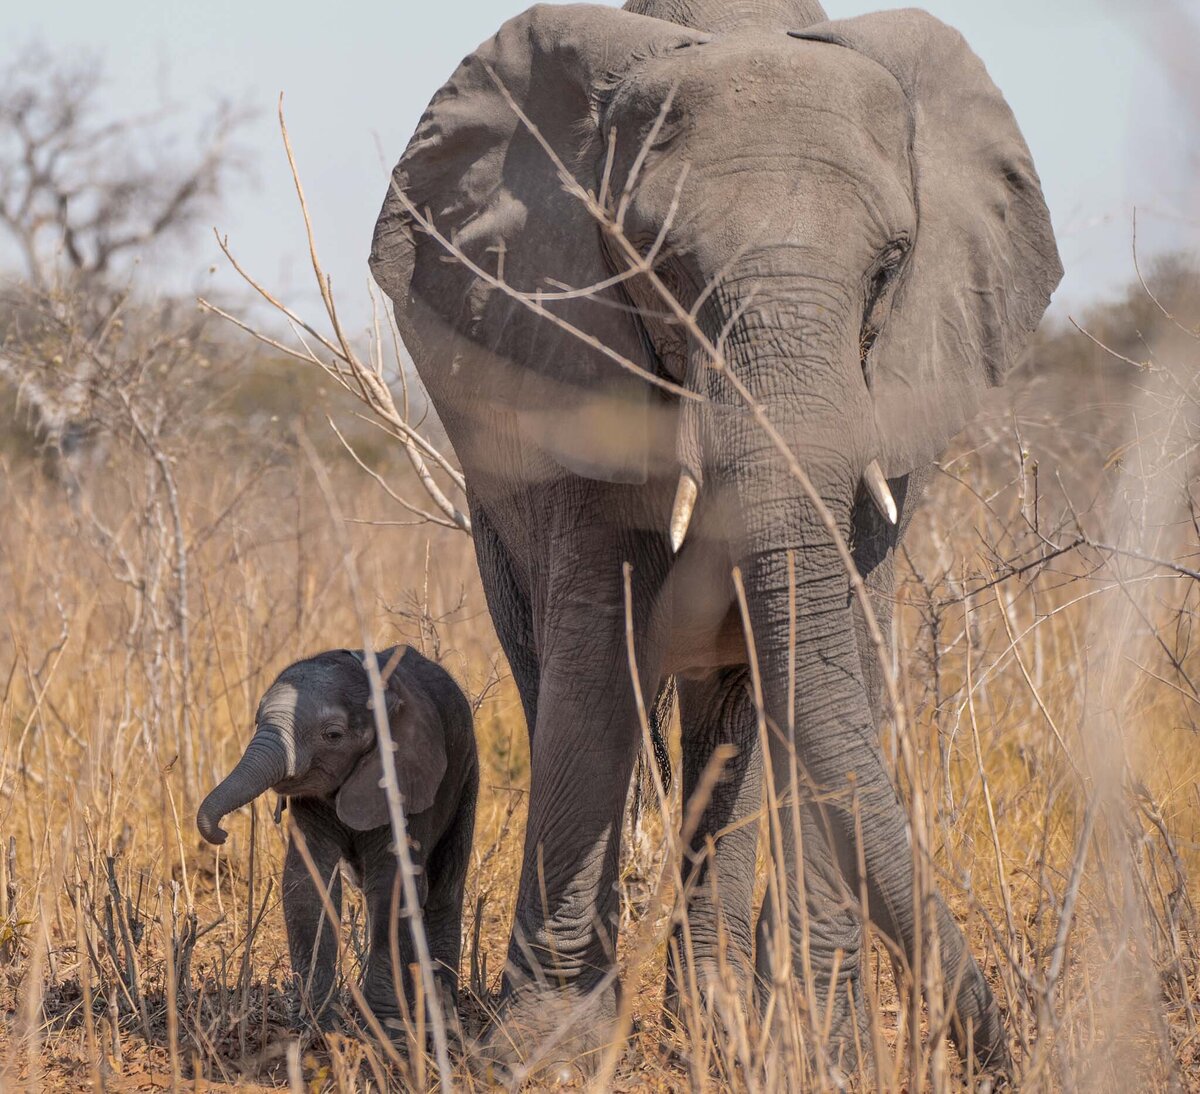 Elephants in Chobe National Park Safari_By Stephanie Vermillion